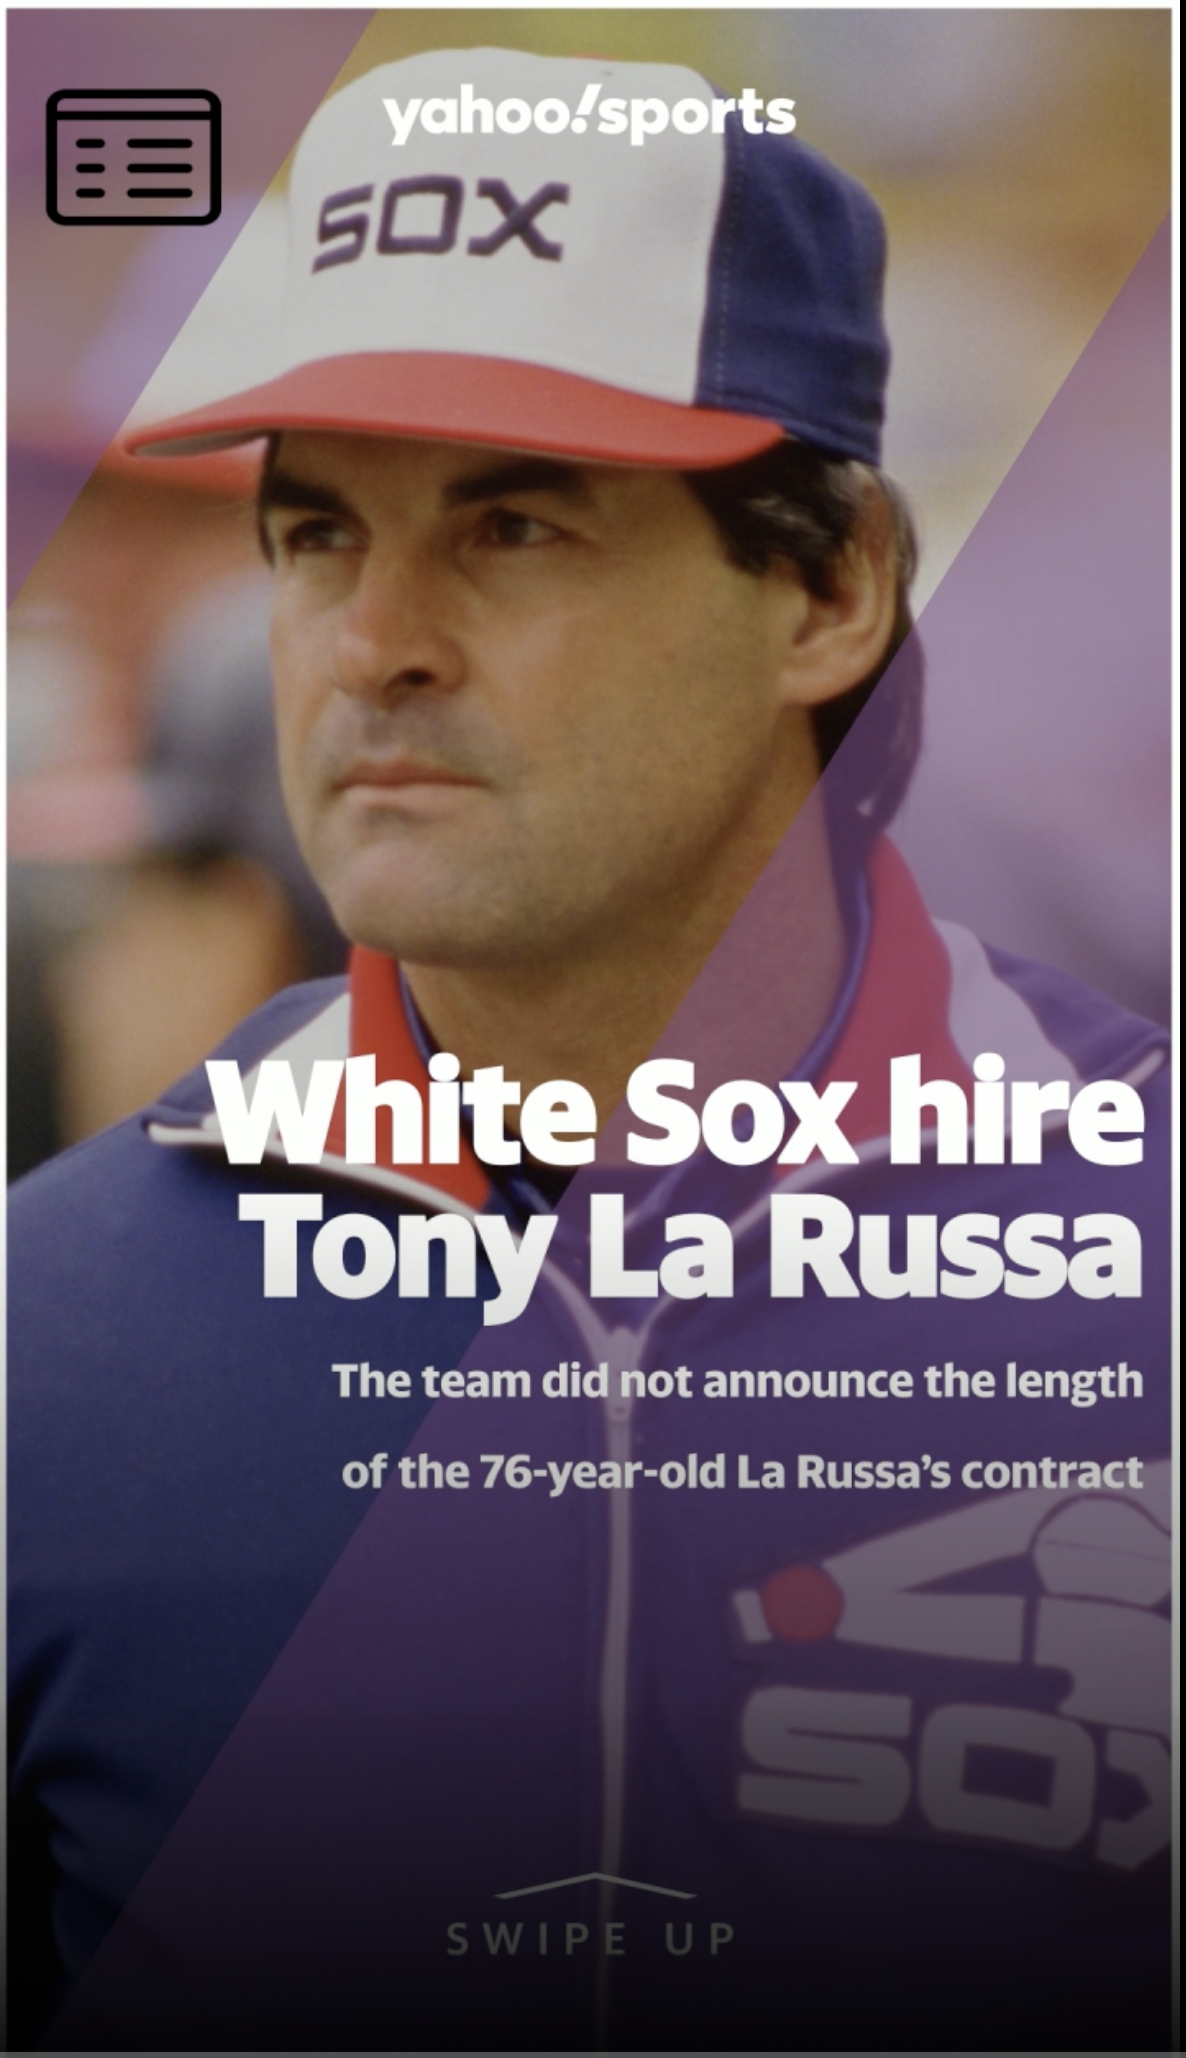 White Sox hire Tony La Russa to lead team to championship